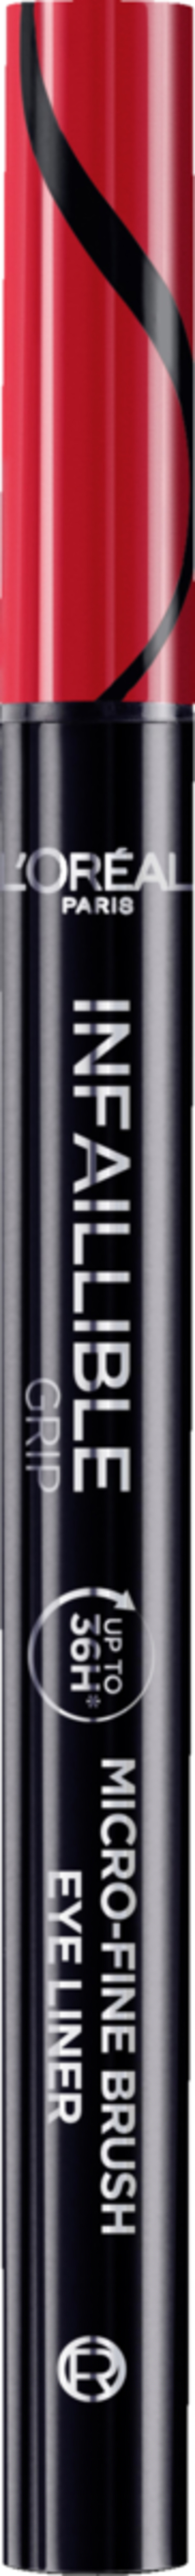 Bild 1 von L’Oréal Paris Infaillible 36h Grip Micro-Fine Eyeliner 01 Obsidian